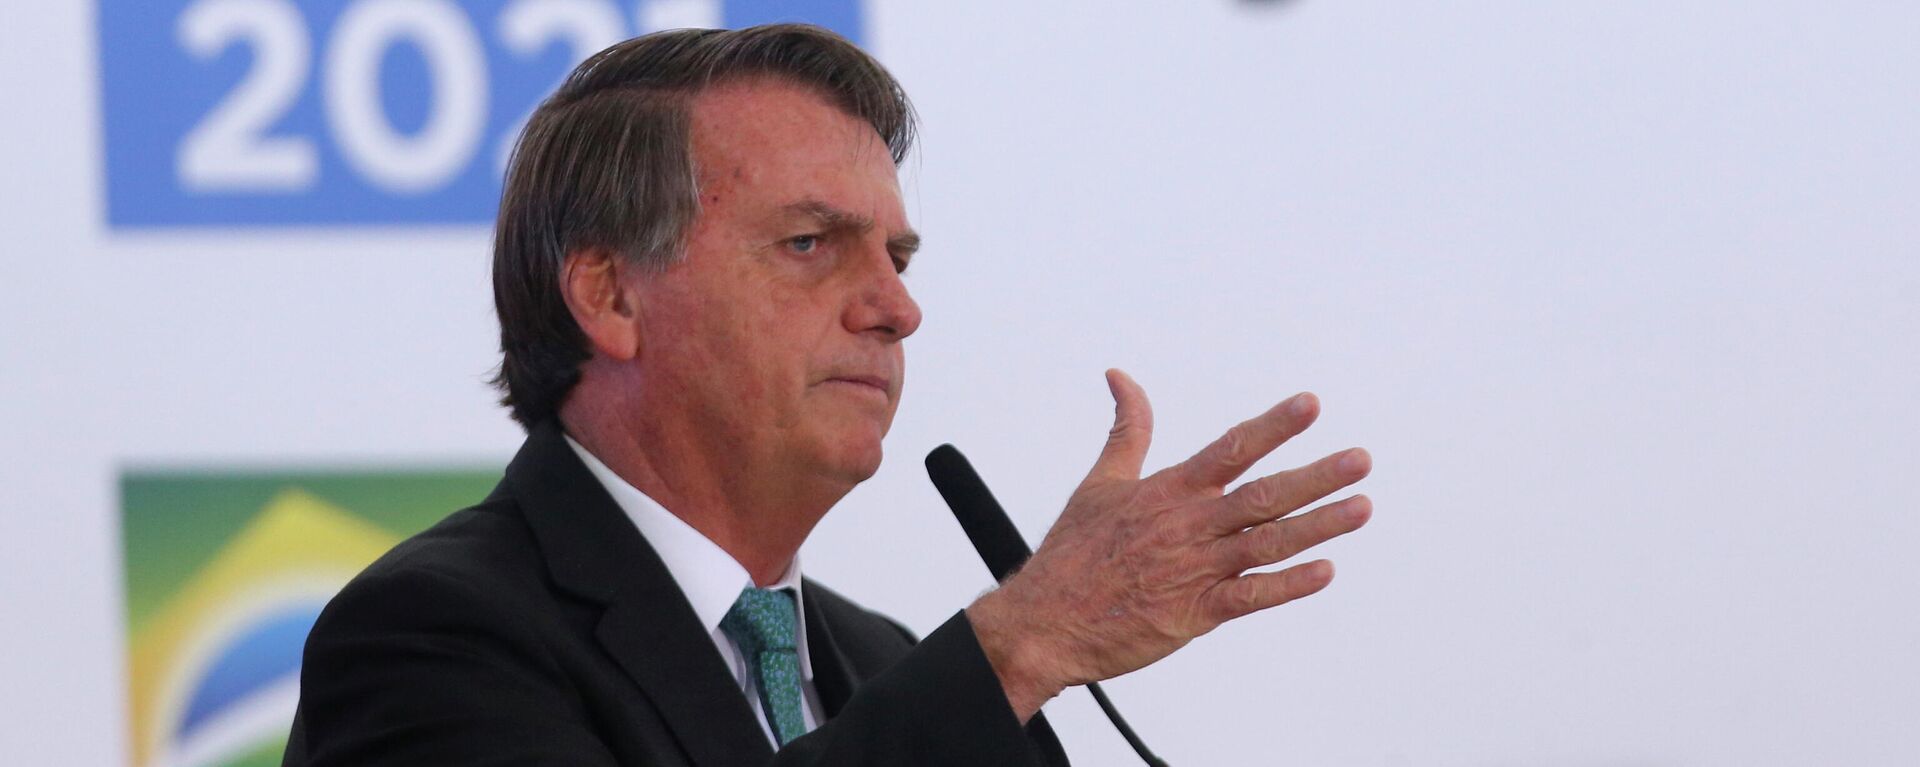 O presidente do Brasil, Jair Bolsonaro, fala durante uma cerimônia para celebrar o Dia Internacional Anticorrupção de 2021 no Palácio do Planalto em Brasília, Brasil, 9 de dezembro de 2021 - Sputnik Brasil, 1920, 12.12.2021